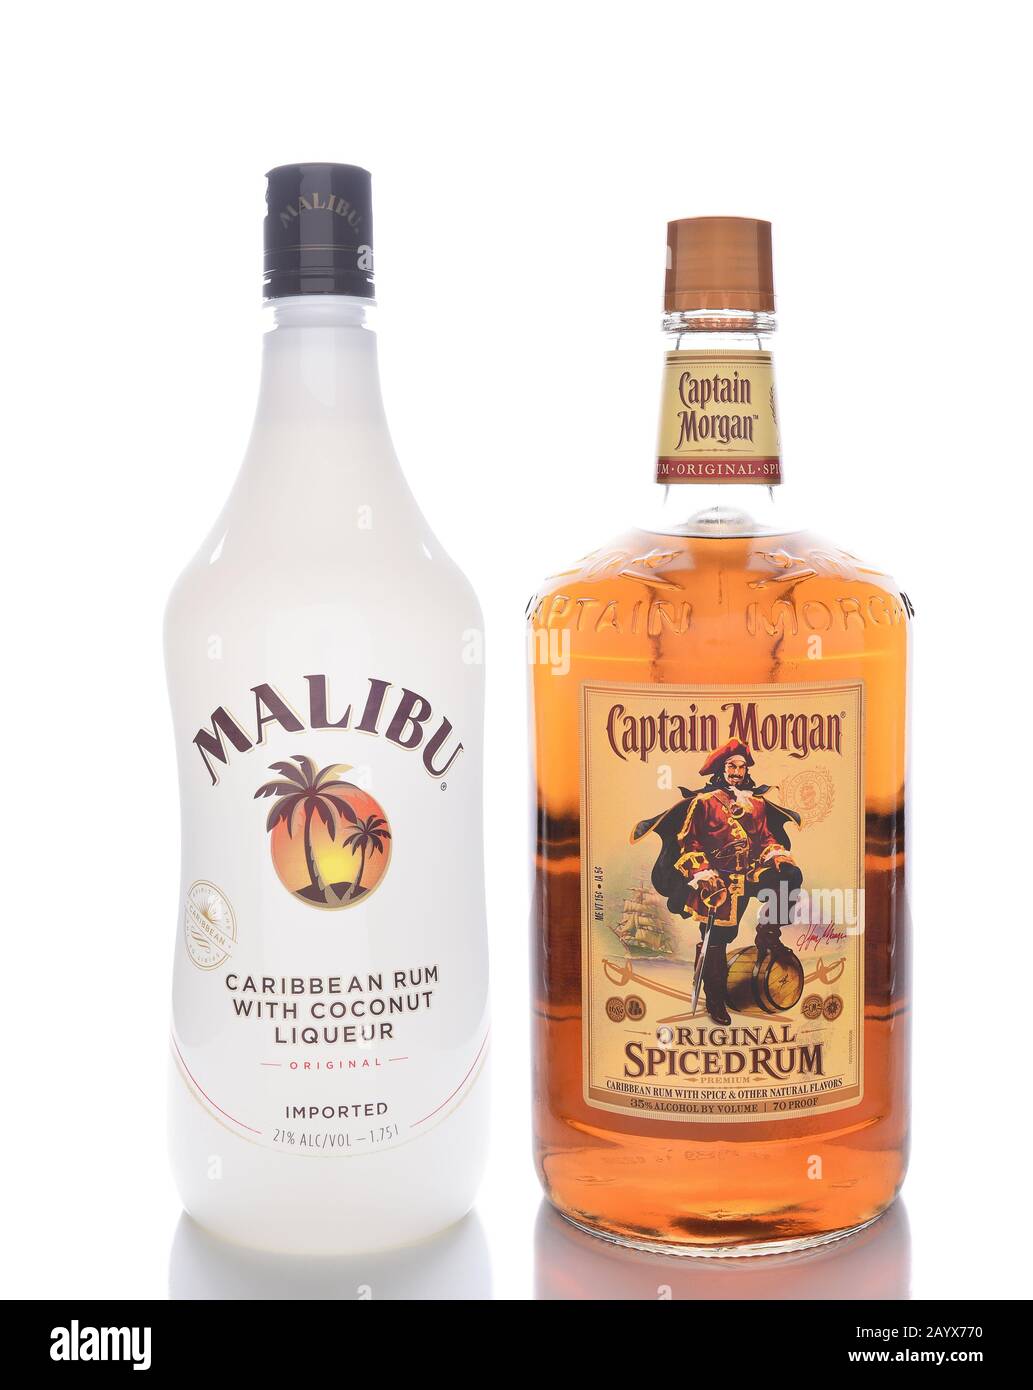 Irvine, CALIFORNIE - 13 JANVIER 2017 : Malibu et le capitaine Morgan Spiced Rum. Deux des rhums aromatisés les plus populaires au monde. Banque D'Images